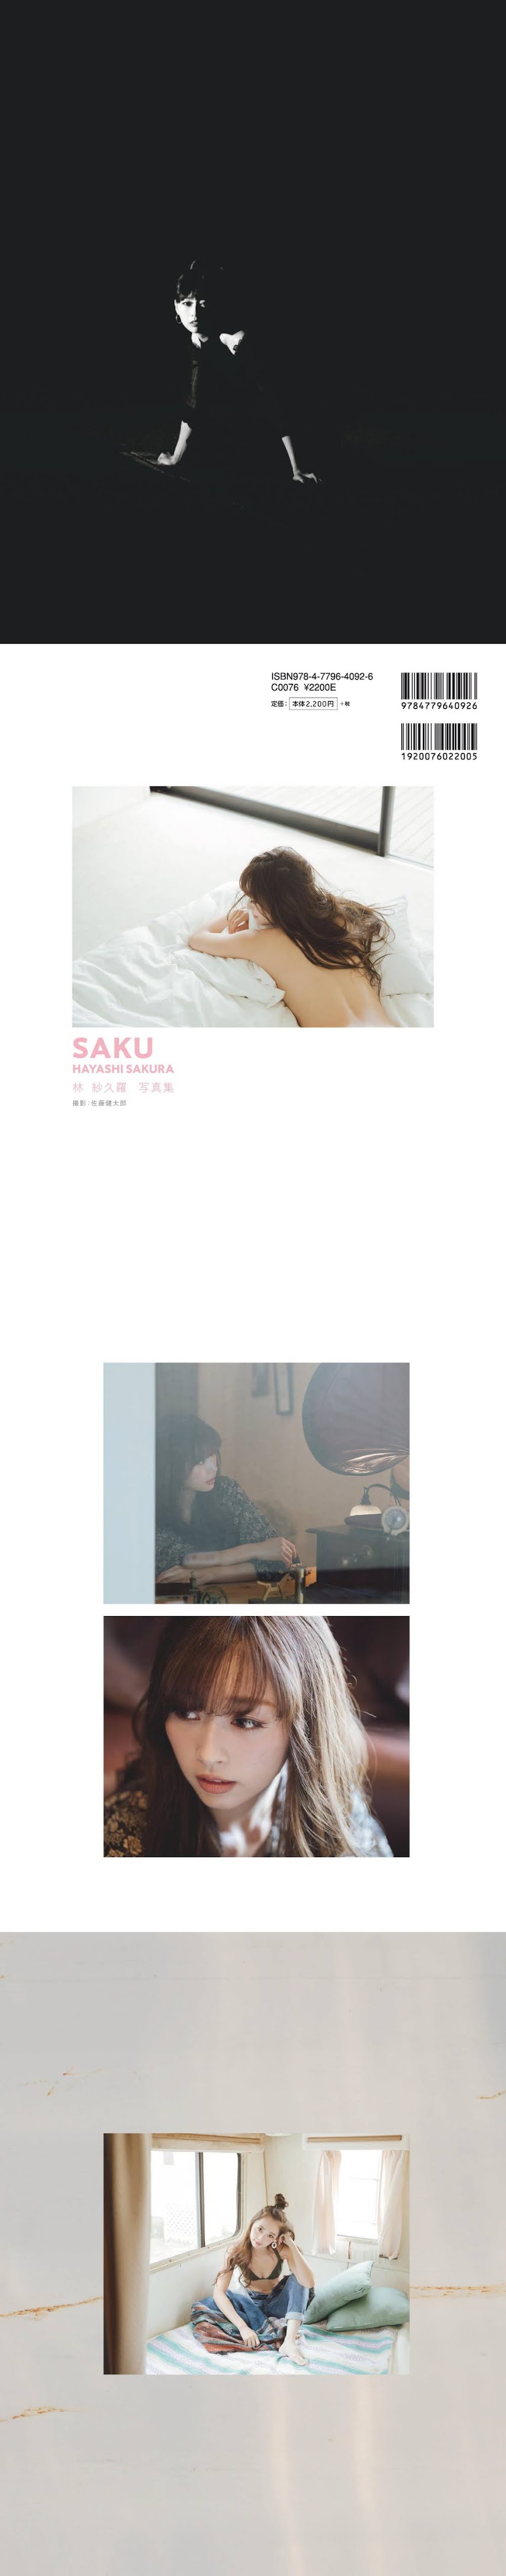 [Digital Photobook] Sakura Hayashi 林紗久羅 - SAKU (2019-12-26)   P214542 - idols